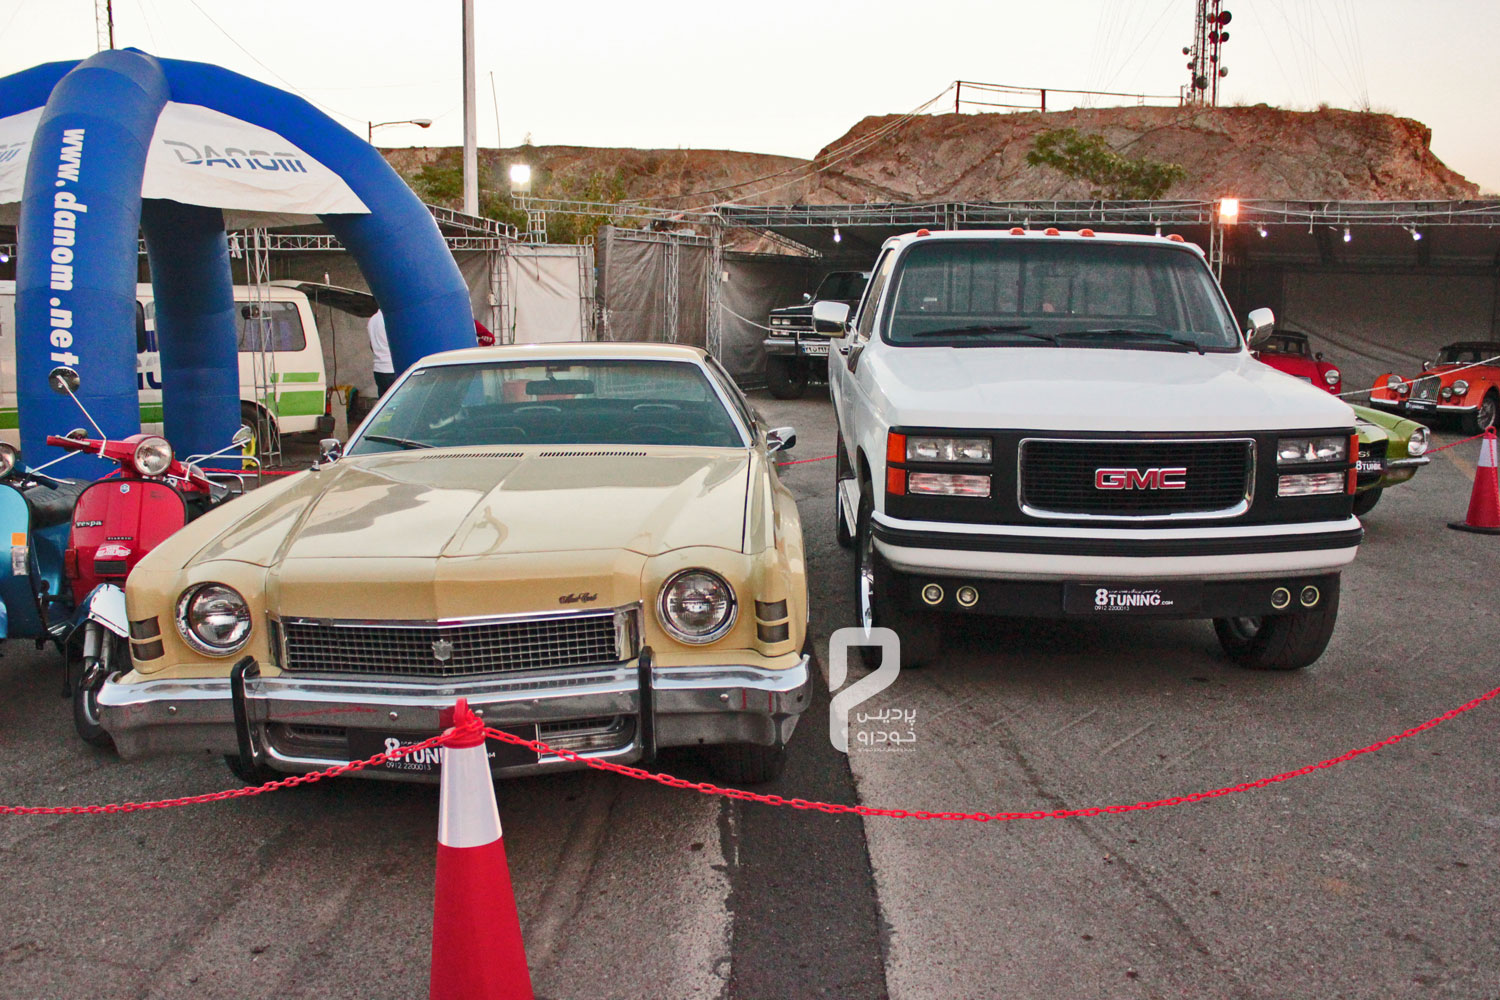 24-جشنواره خودروهای تیون شده و کلاسیک  در توچال برگزار شد